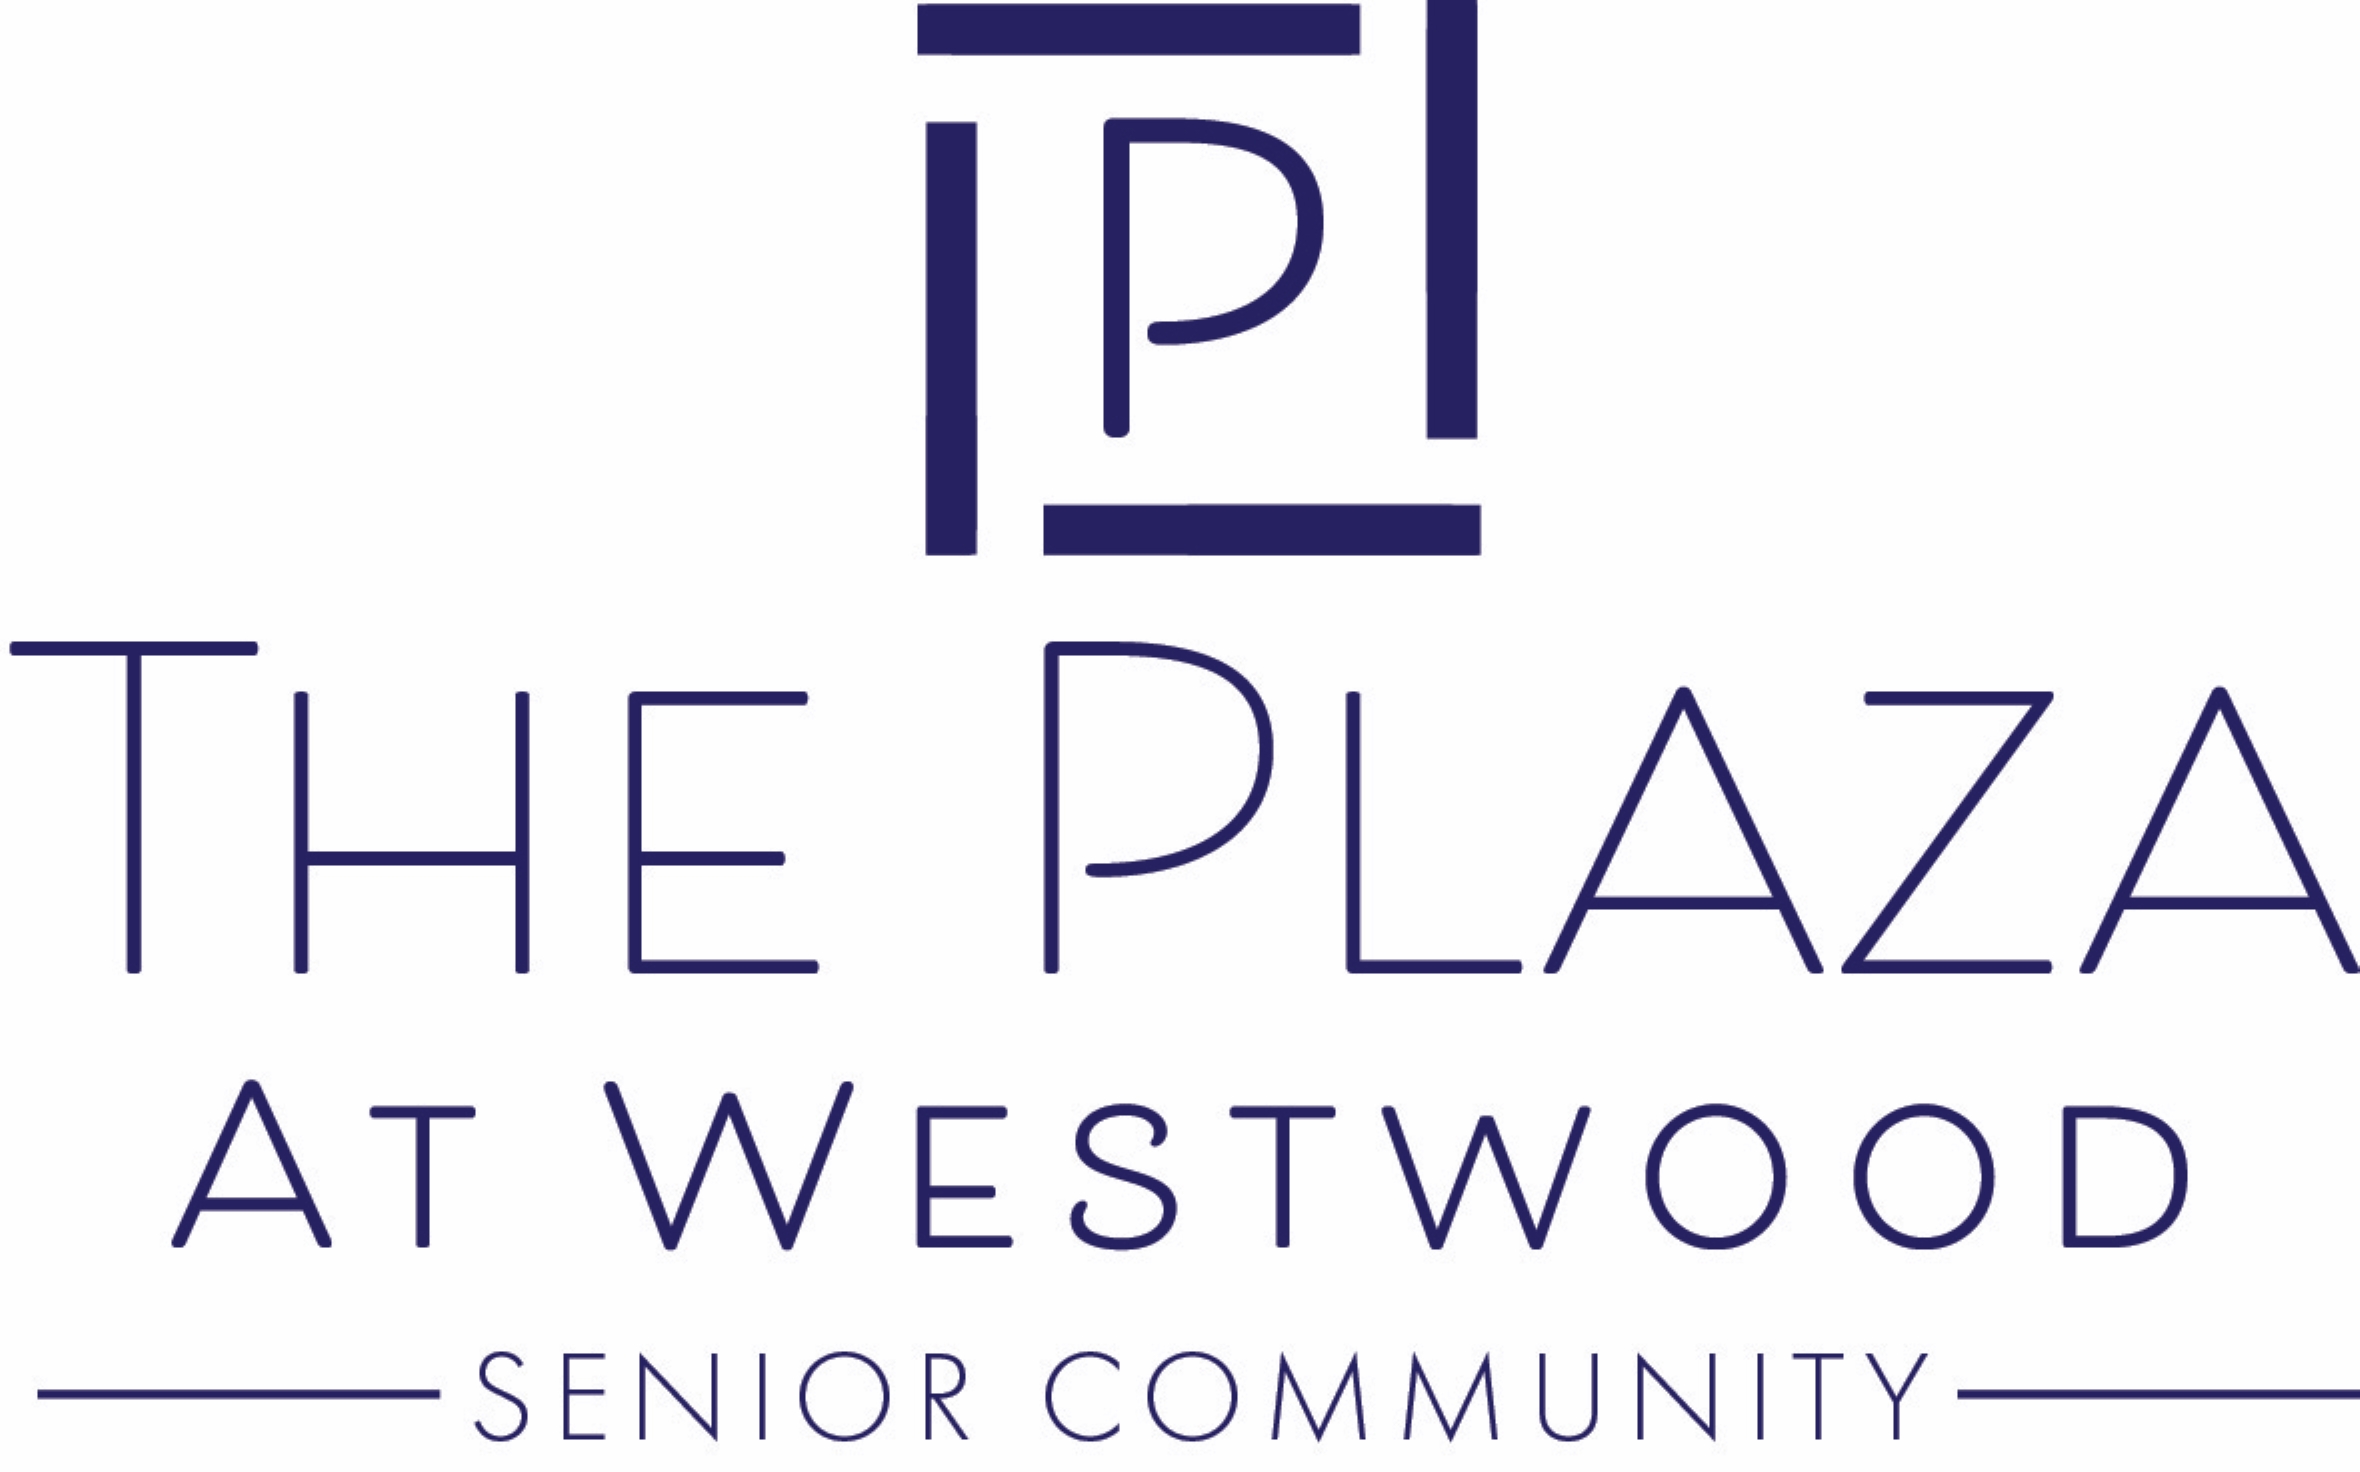 Company Logo reads'The Plaza at Westwood, Senior Community'